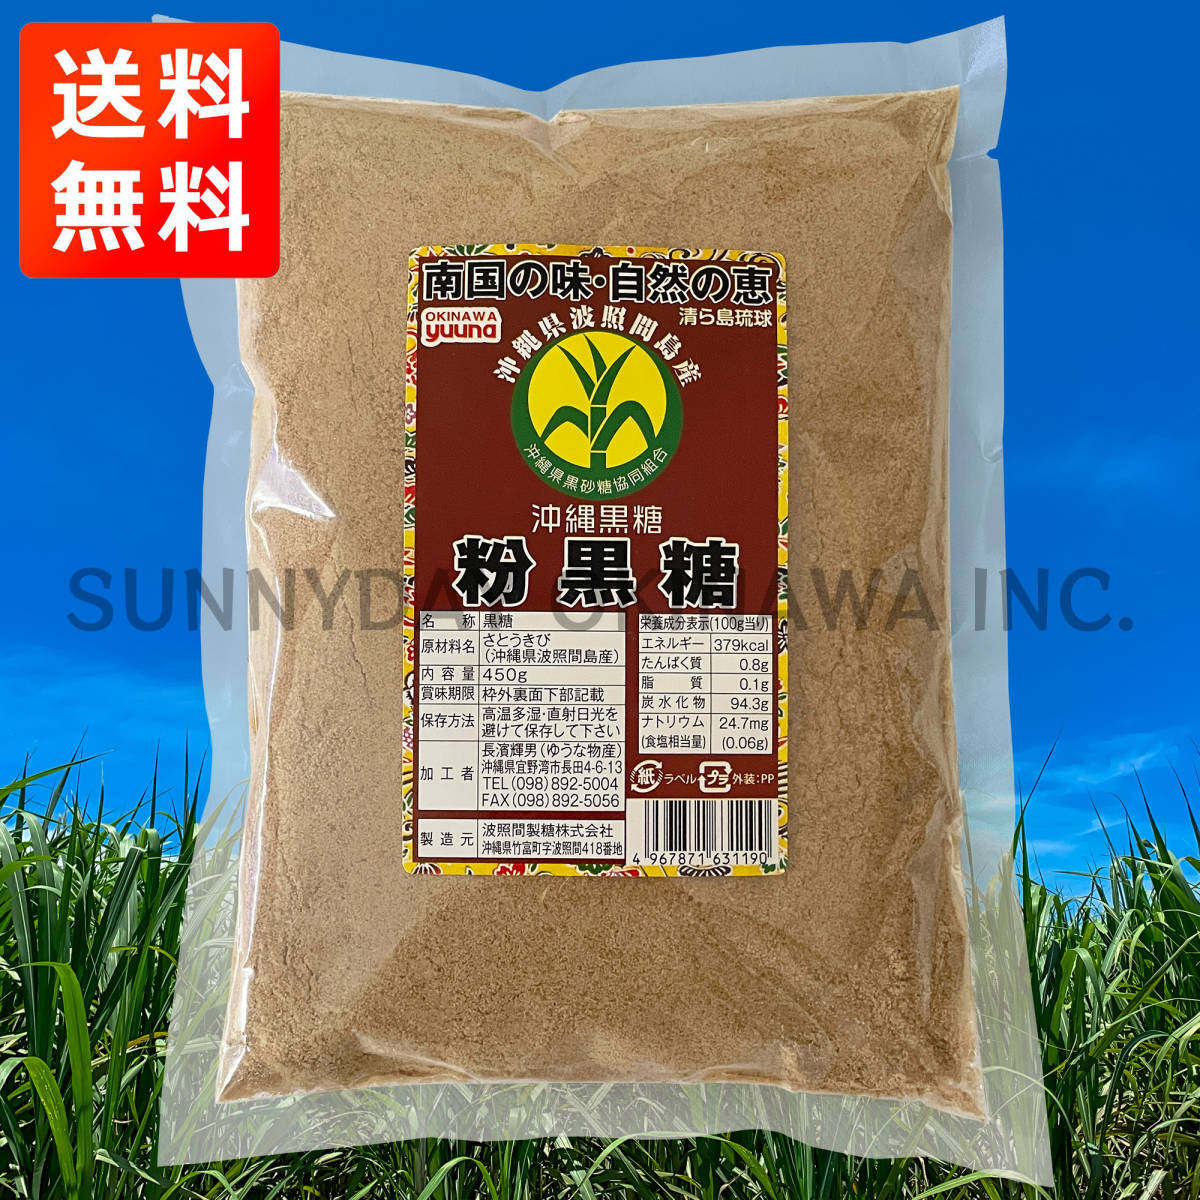  волна . промежуток остров производство мука коричневый сахар 450g 1 пакет Okinawa префектура производство порошок оригинальный коричневый сахар коричневый сахар пудра . земля производство ваш заказ 